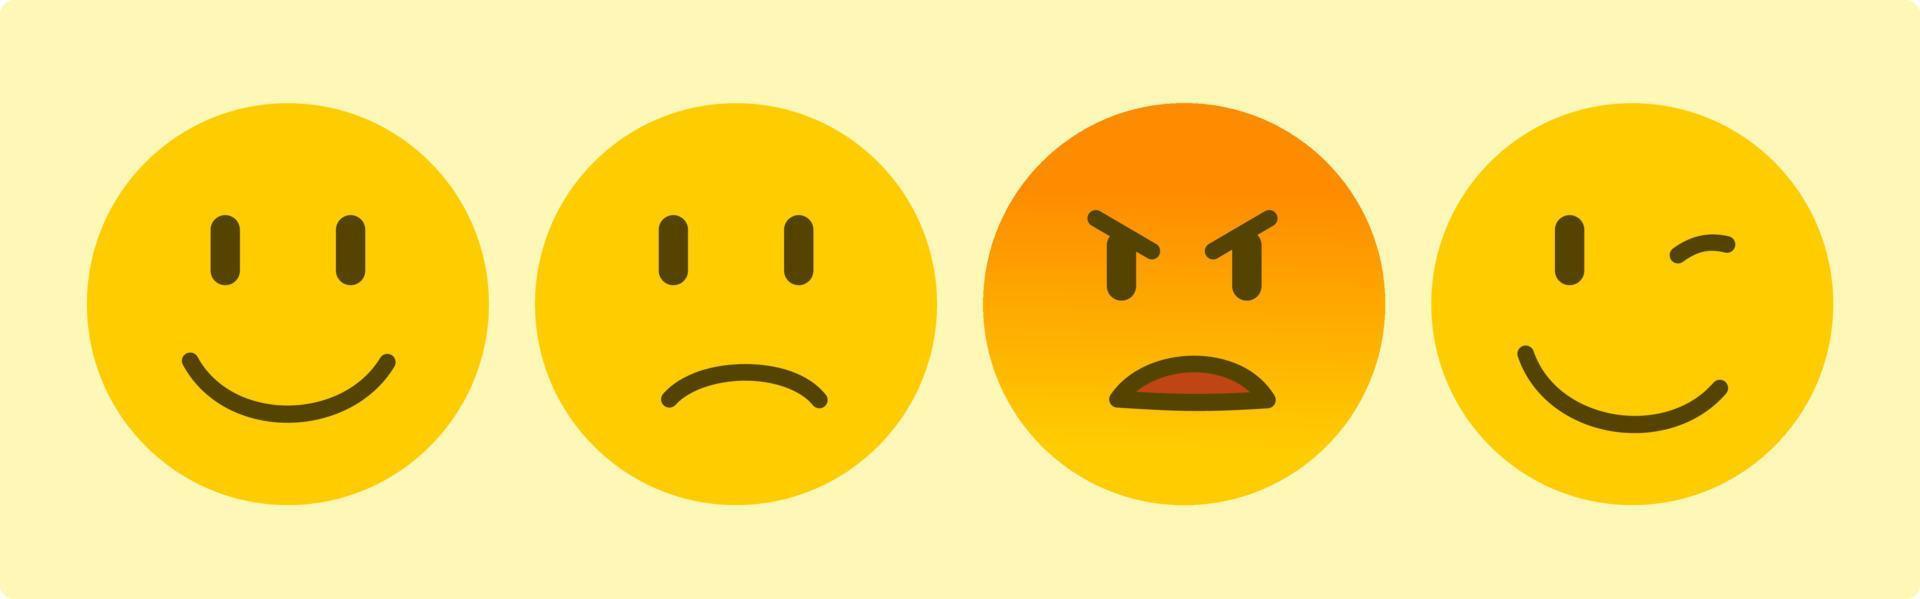 conjunto de emoticon emoji amarelo com quatro emoções, sorriso triste, raiva e confiança, vetor de ícone